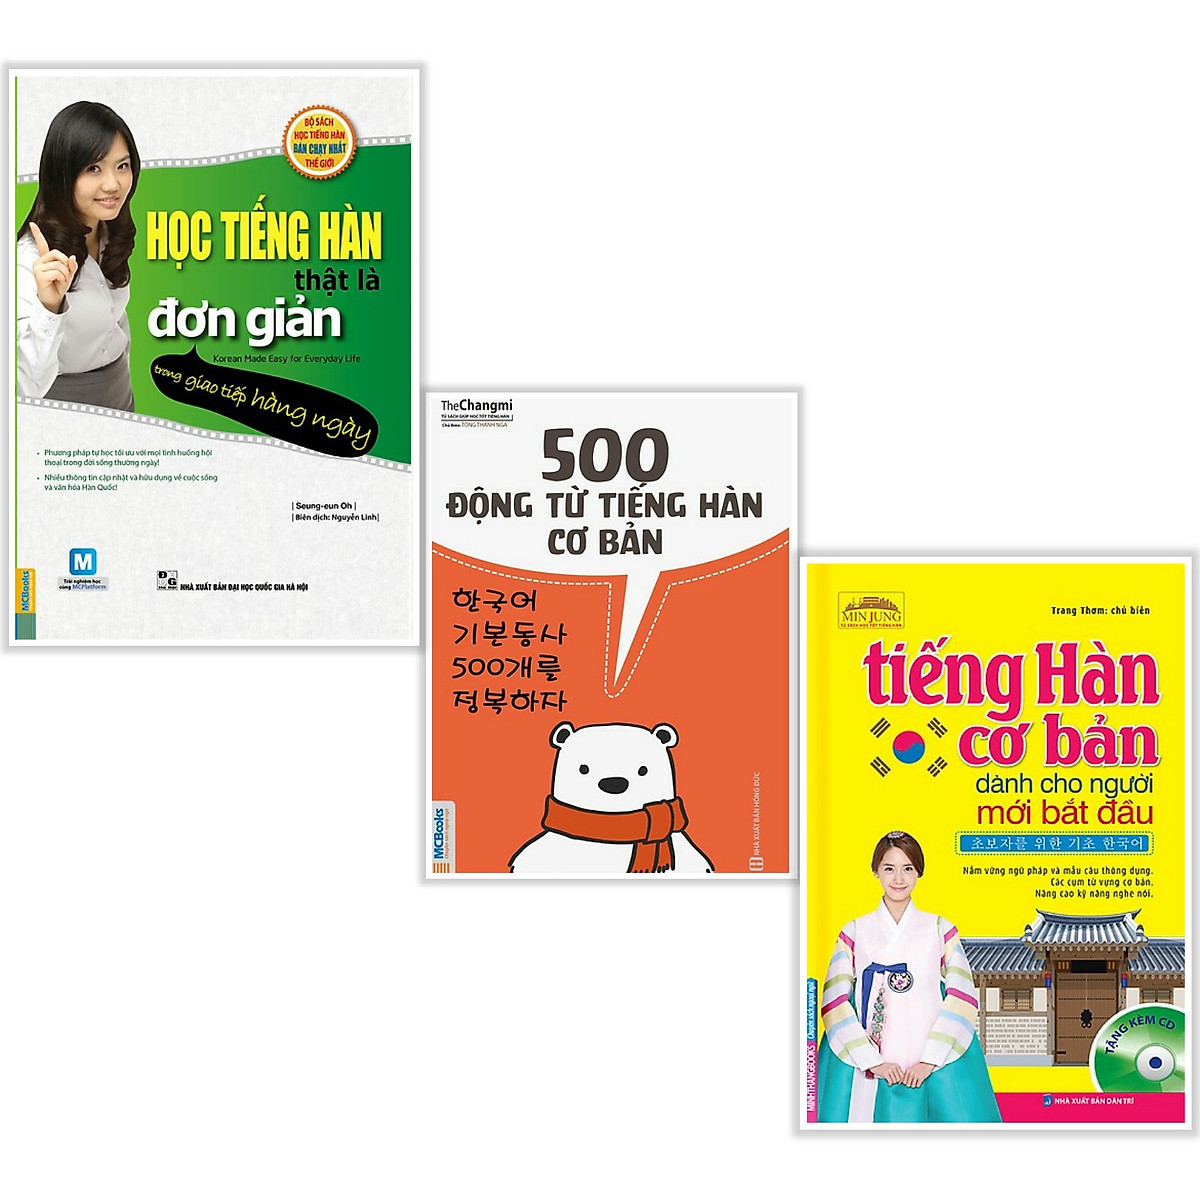 Combo Sách Tiếng Hàn: Học Tiếng Hàn Thật Là Đơn Giản + 500 Động Từ Tiếng Hàn Cơ Bản + Tiếng Hàn Cơ Bản Dành Cho Người Mới Bắt Đầu (3 cuốn - Tặng kèm Bookmark Happy Life)